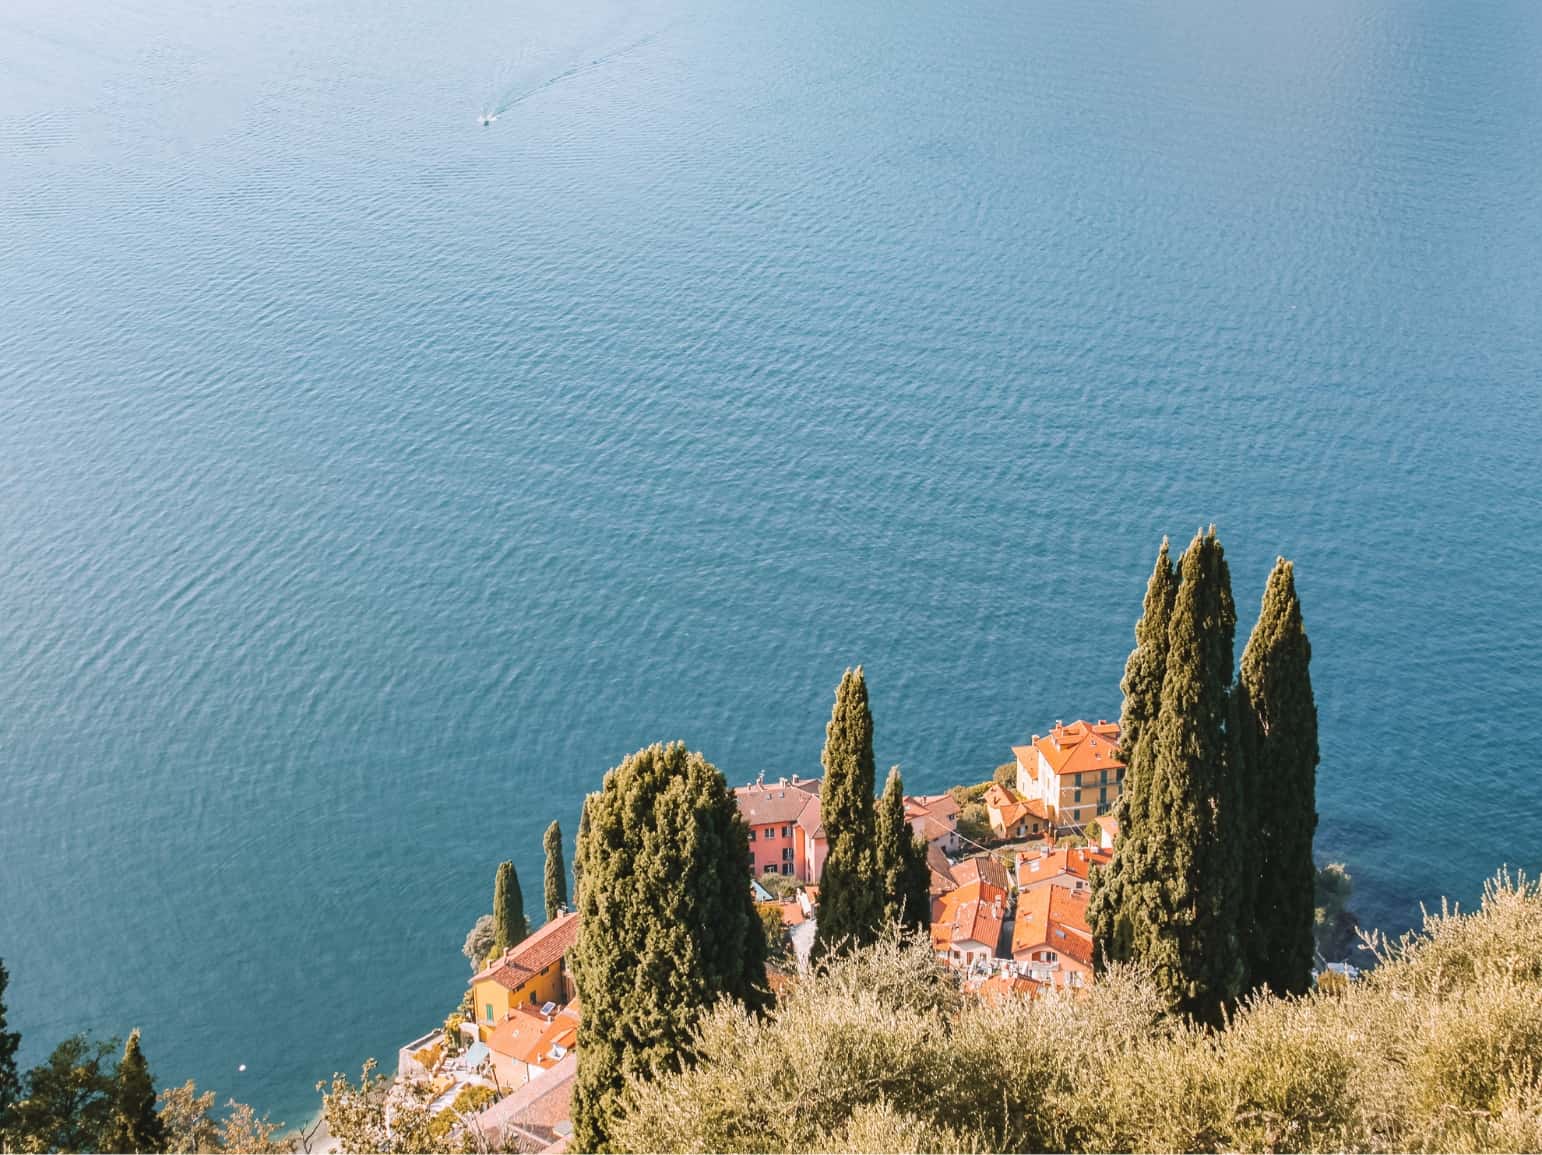 Views from the Sentiero del Viandante hike in Lake Como